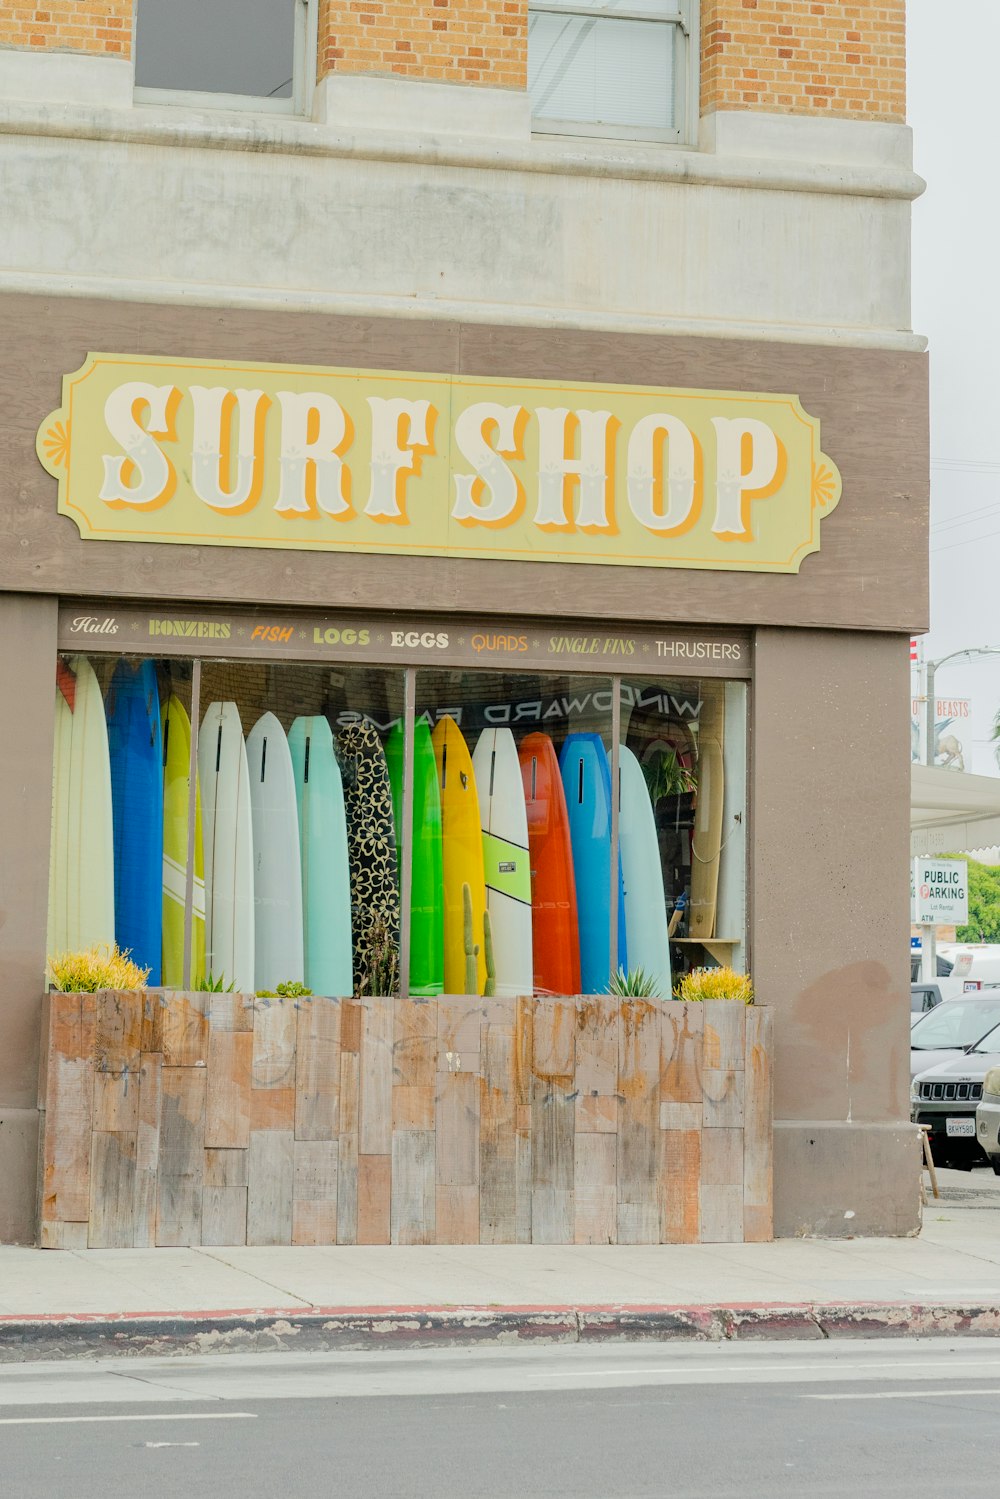 Negozio Surf Shop